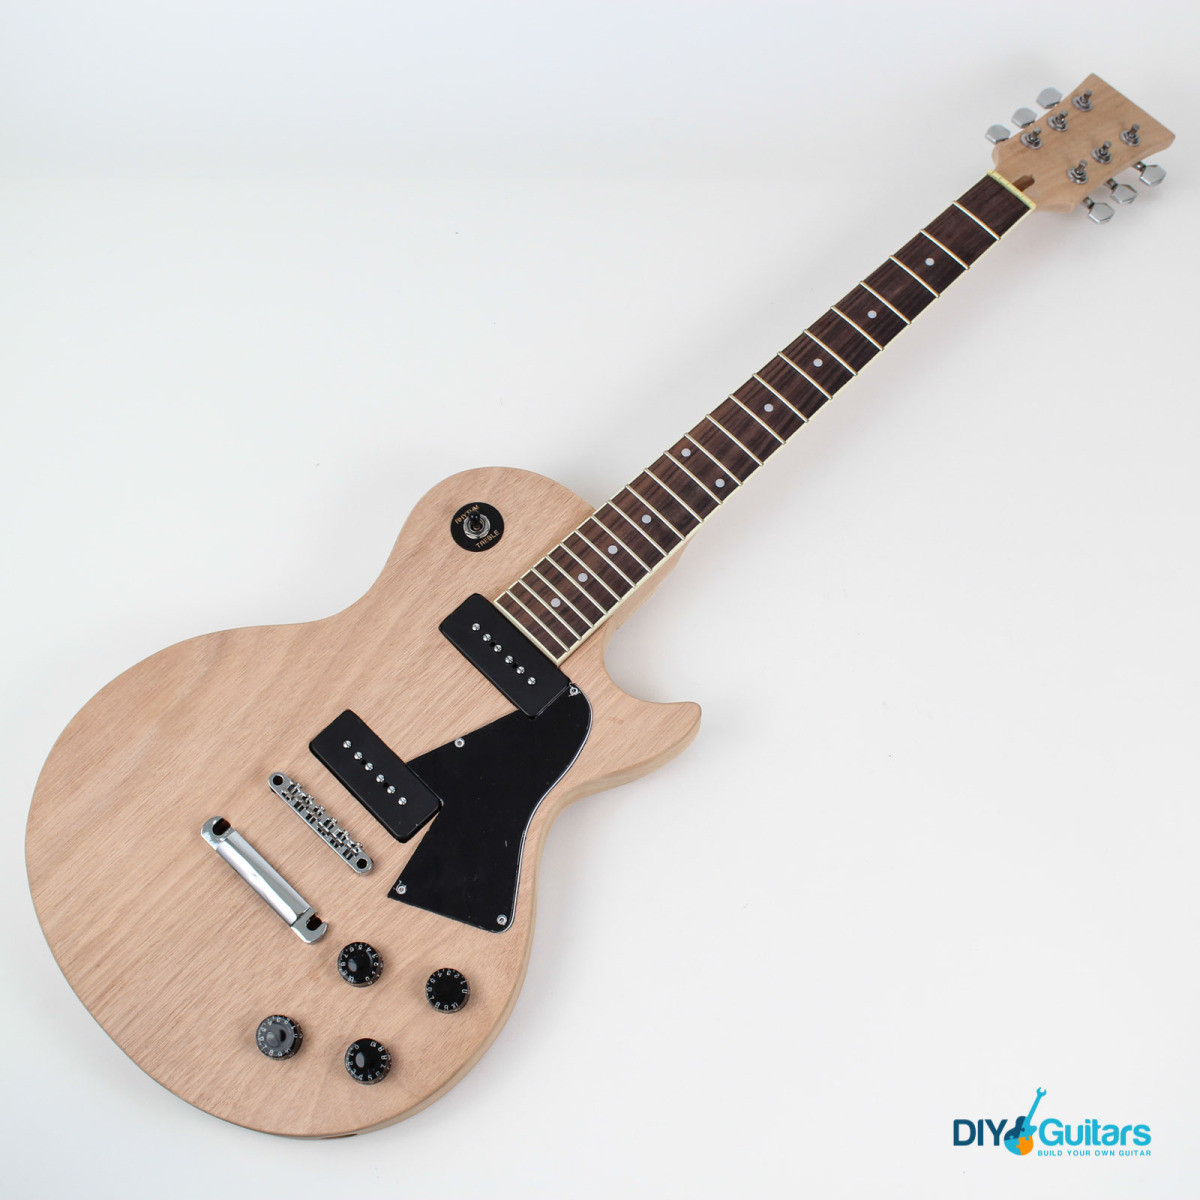 DIY Les Paul Kit
 Gibson Les Paul JR Style Single Cutaway DIY Guitar Kit